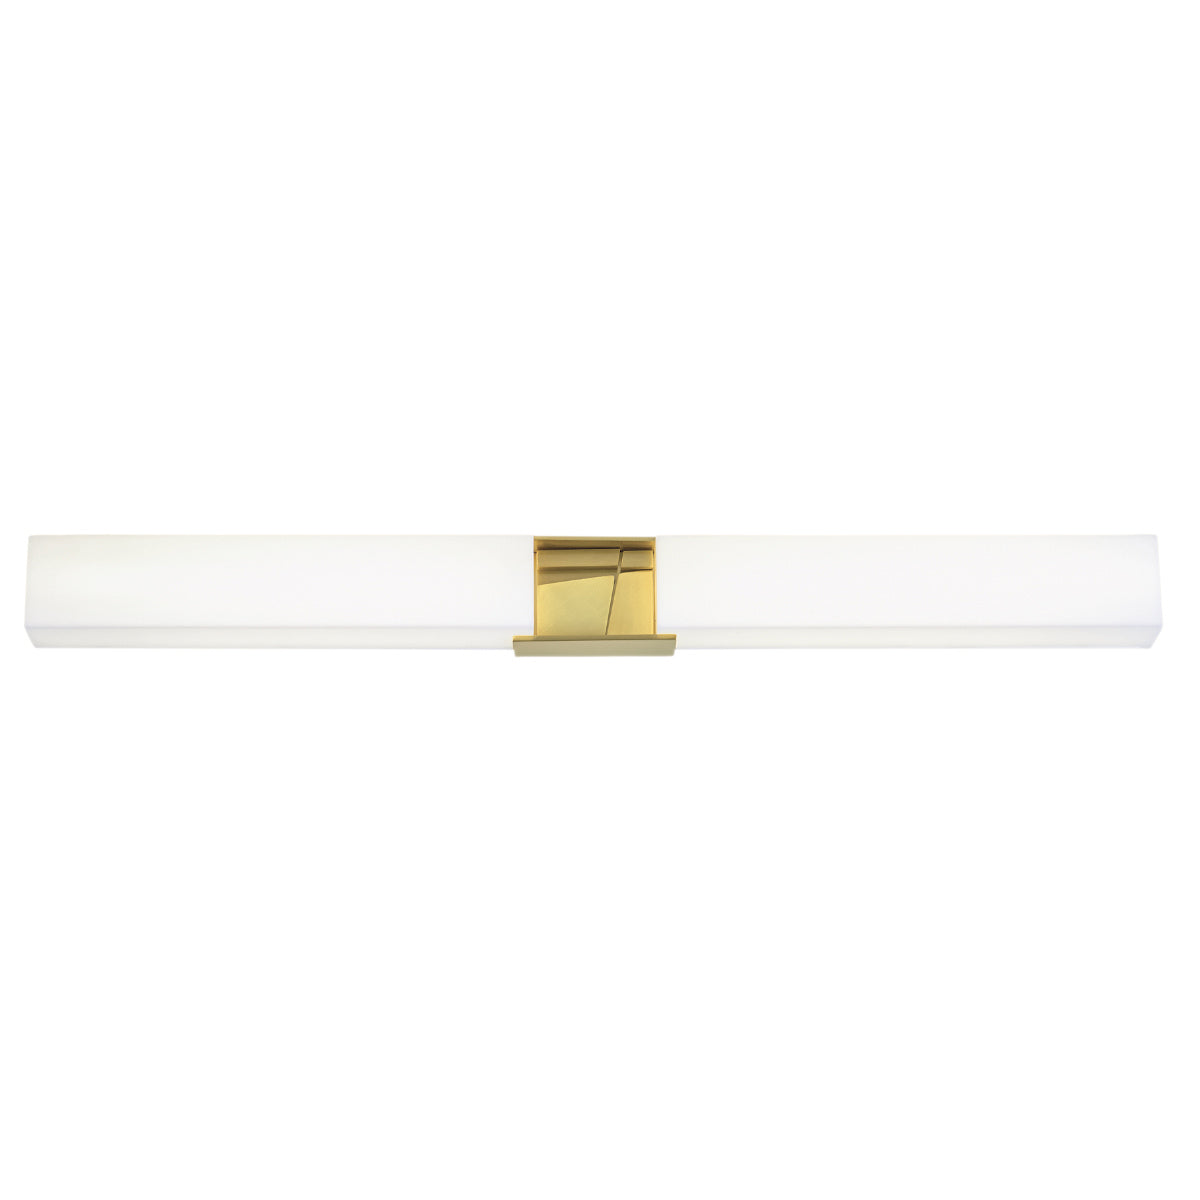 Norwell Atremis 9756-SB-MA Wall Light - Satin Brass